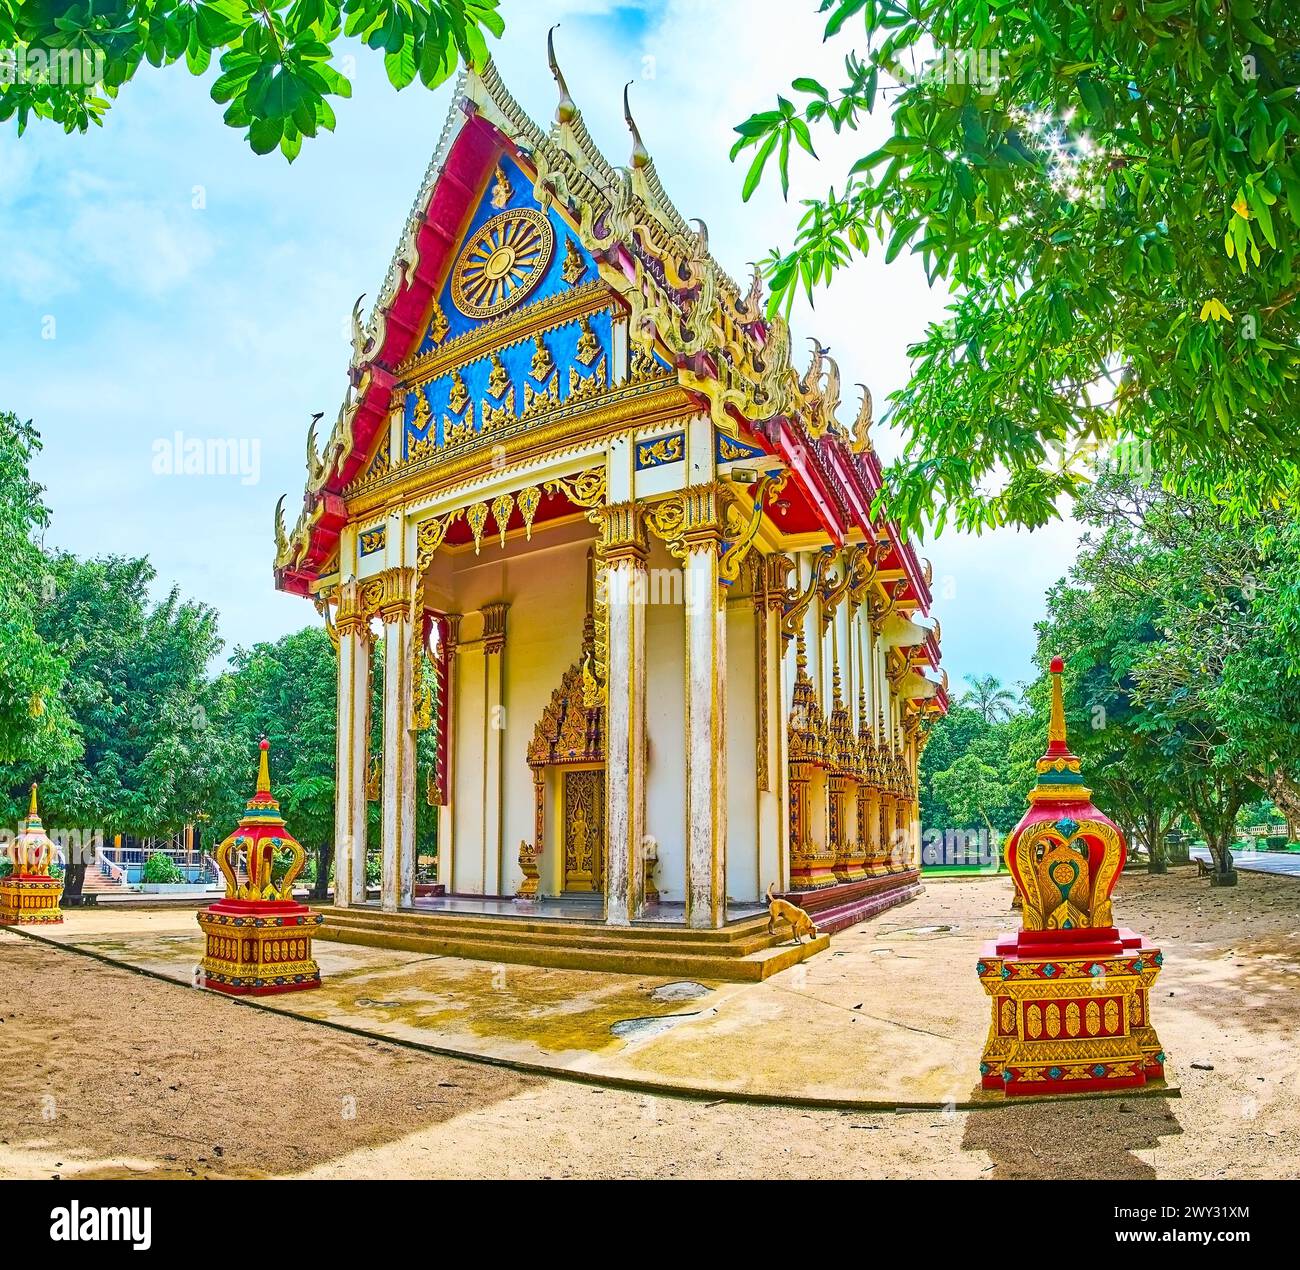 Lo stupefacente Ubosot del tempio Wat Suwan Kuha con decorazioni scolpite e scolpite, tetto multi-stanco e tavole da bargeboard in legno dorato con serpenti Naga, Phan Foto Stock